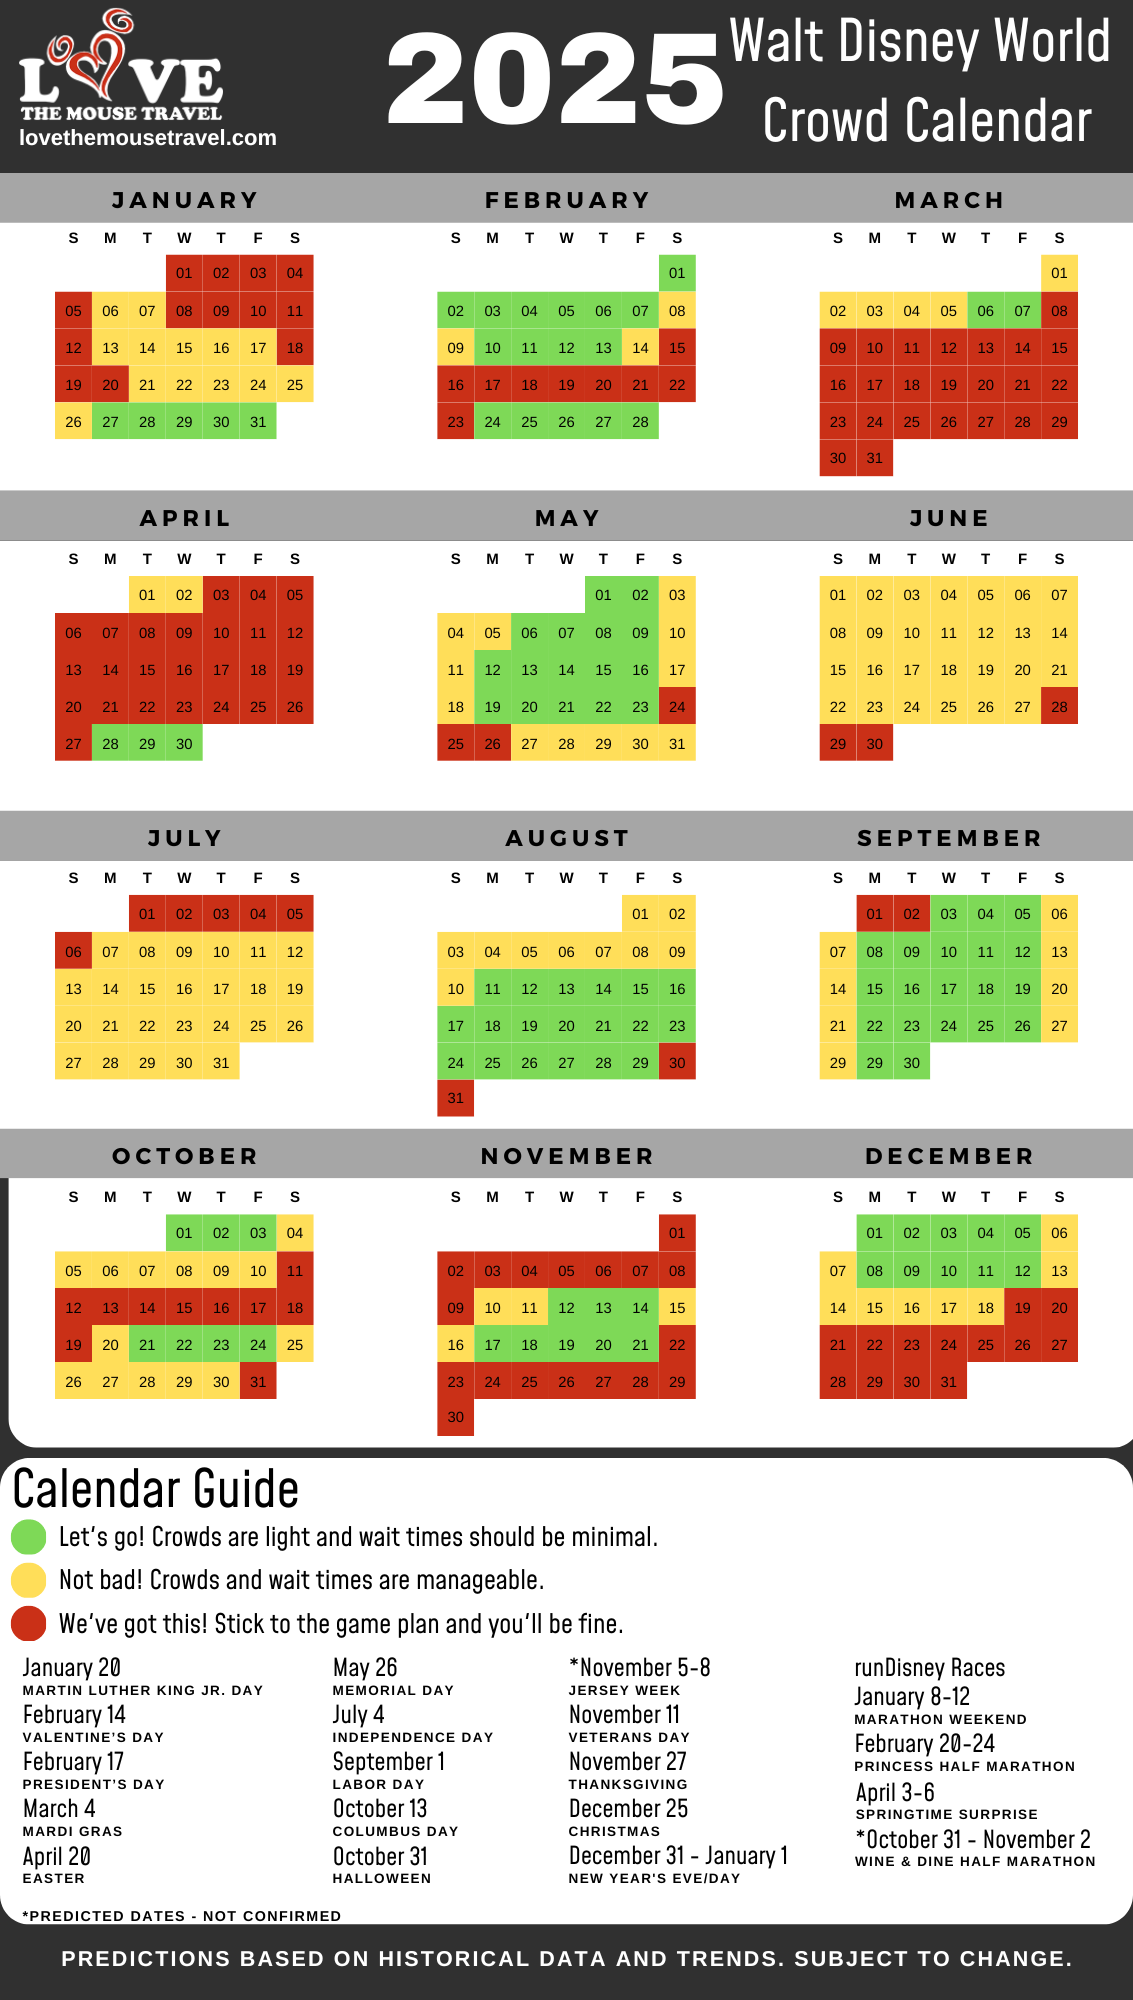 disney-vacation-club-availability-calendar-lausd-academic-calendar-explained